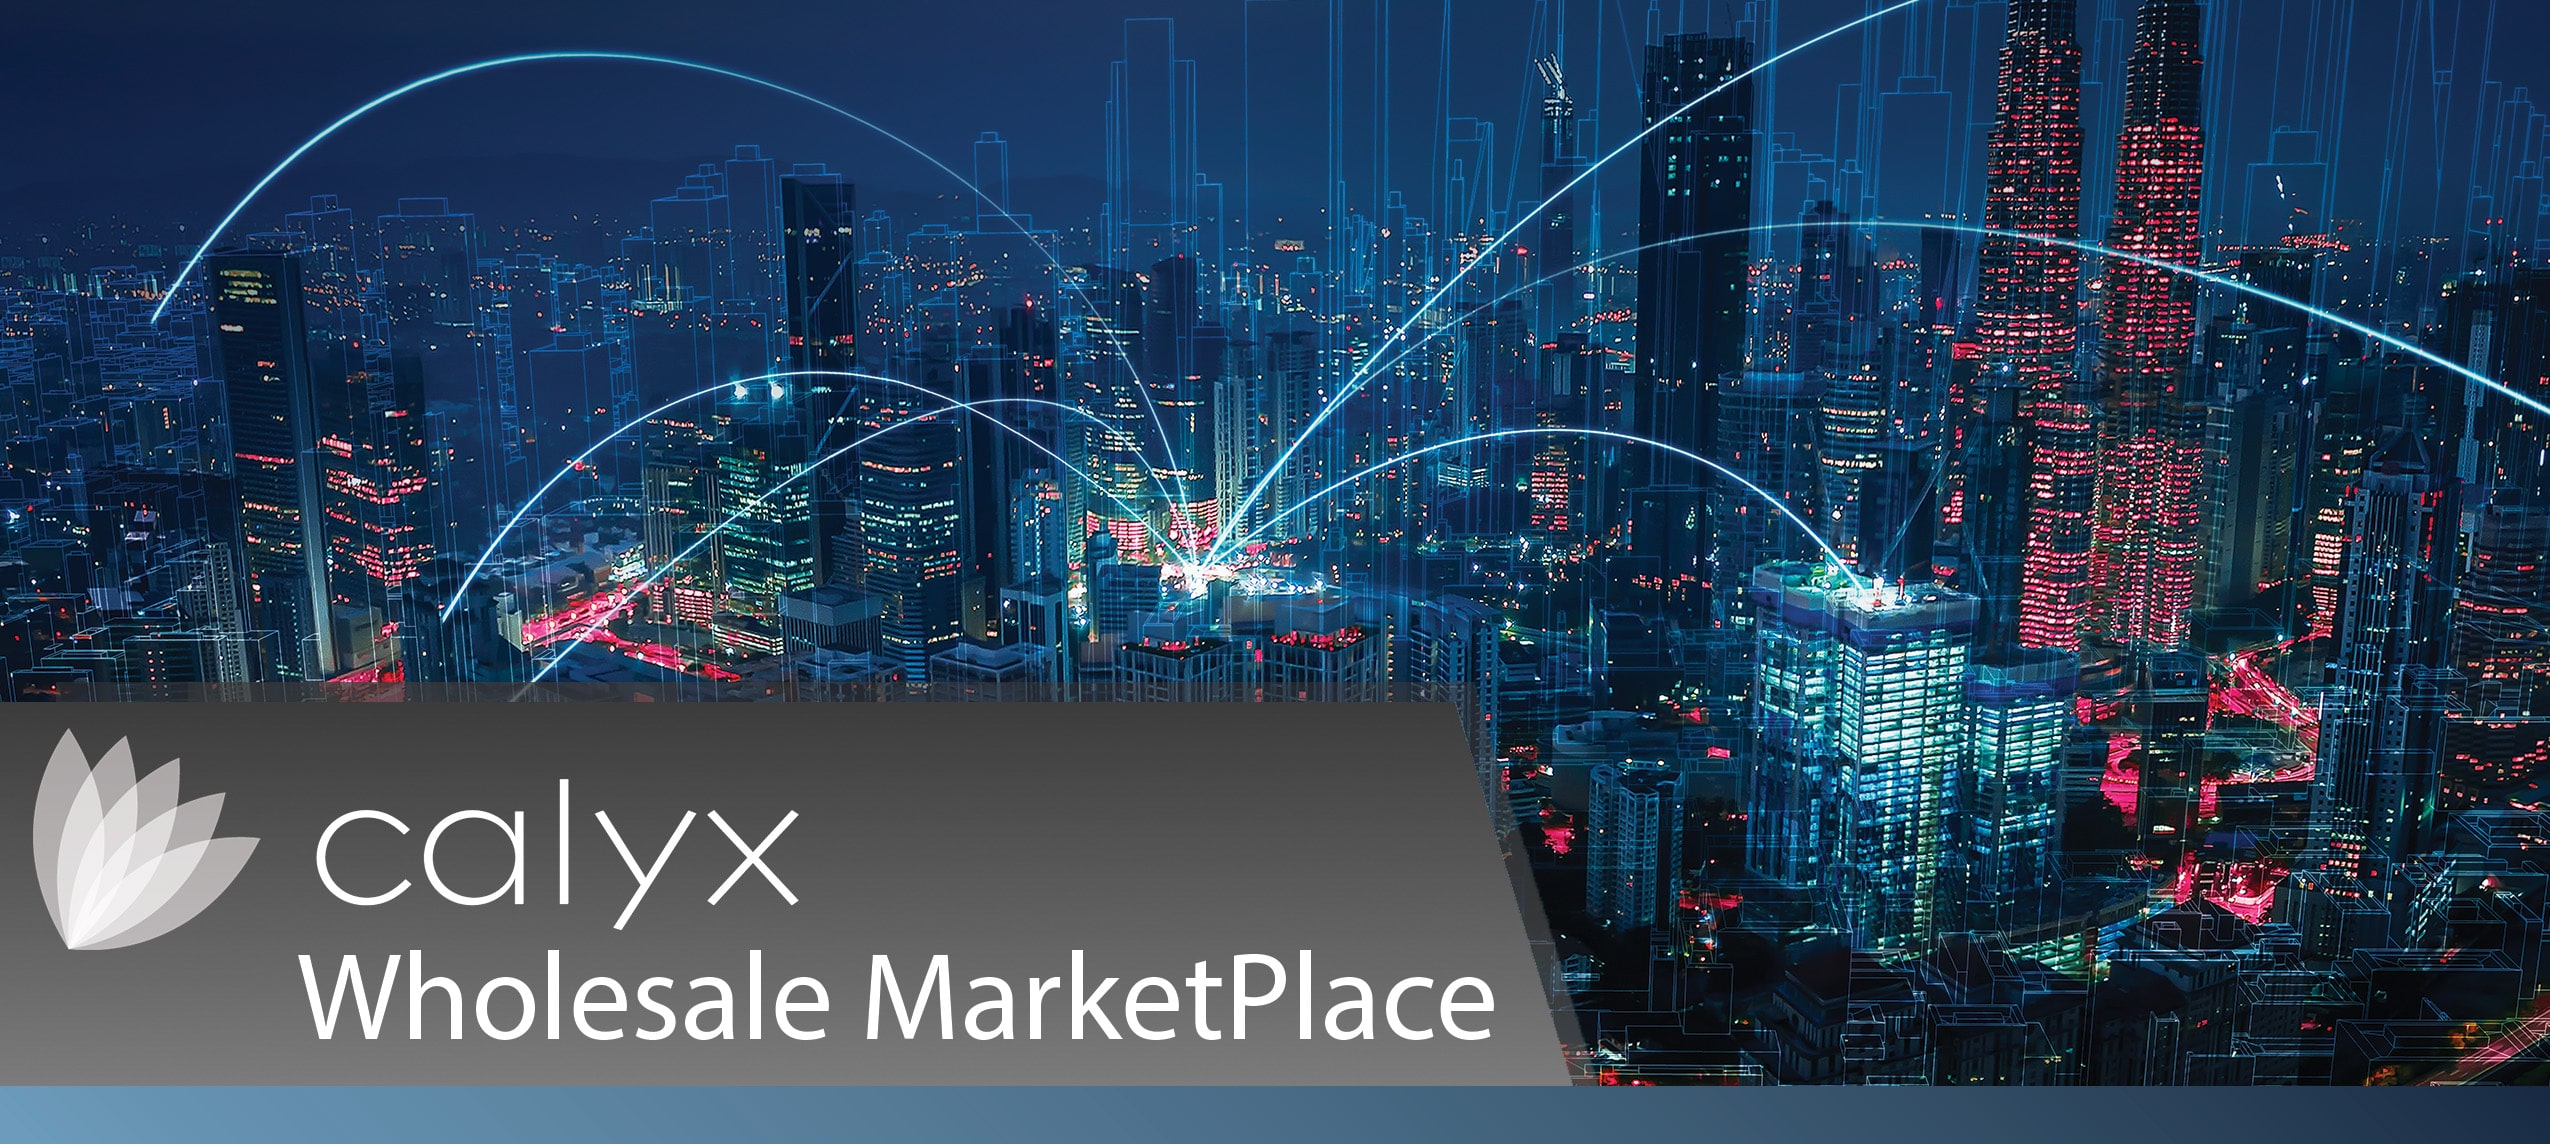 Calyx Wholesale MarketPlace